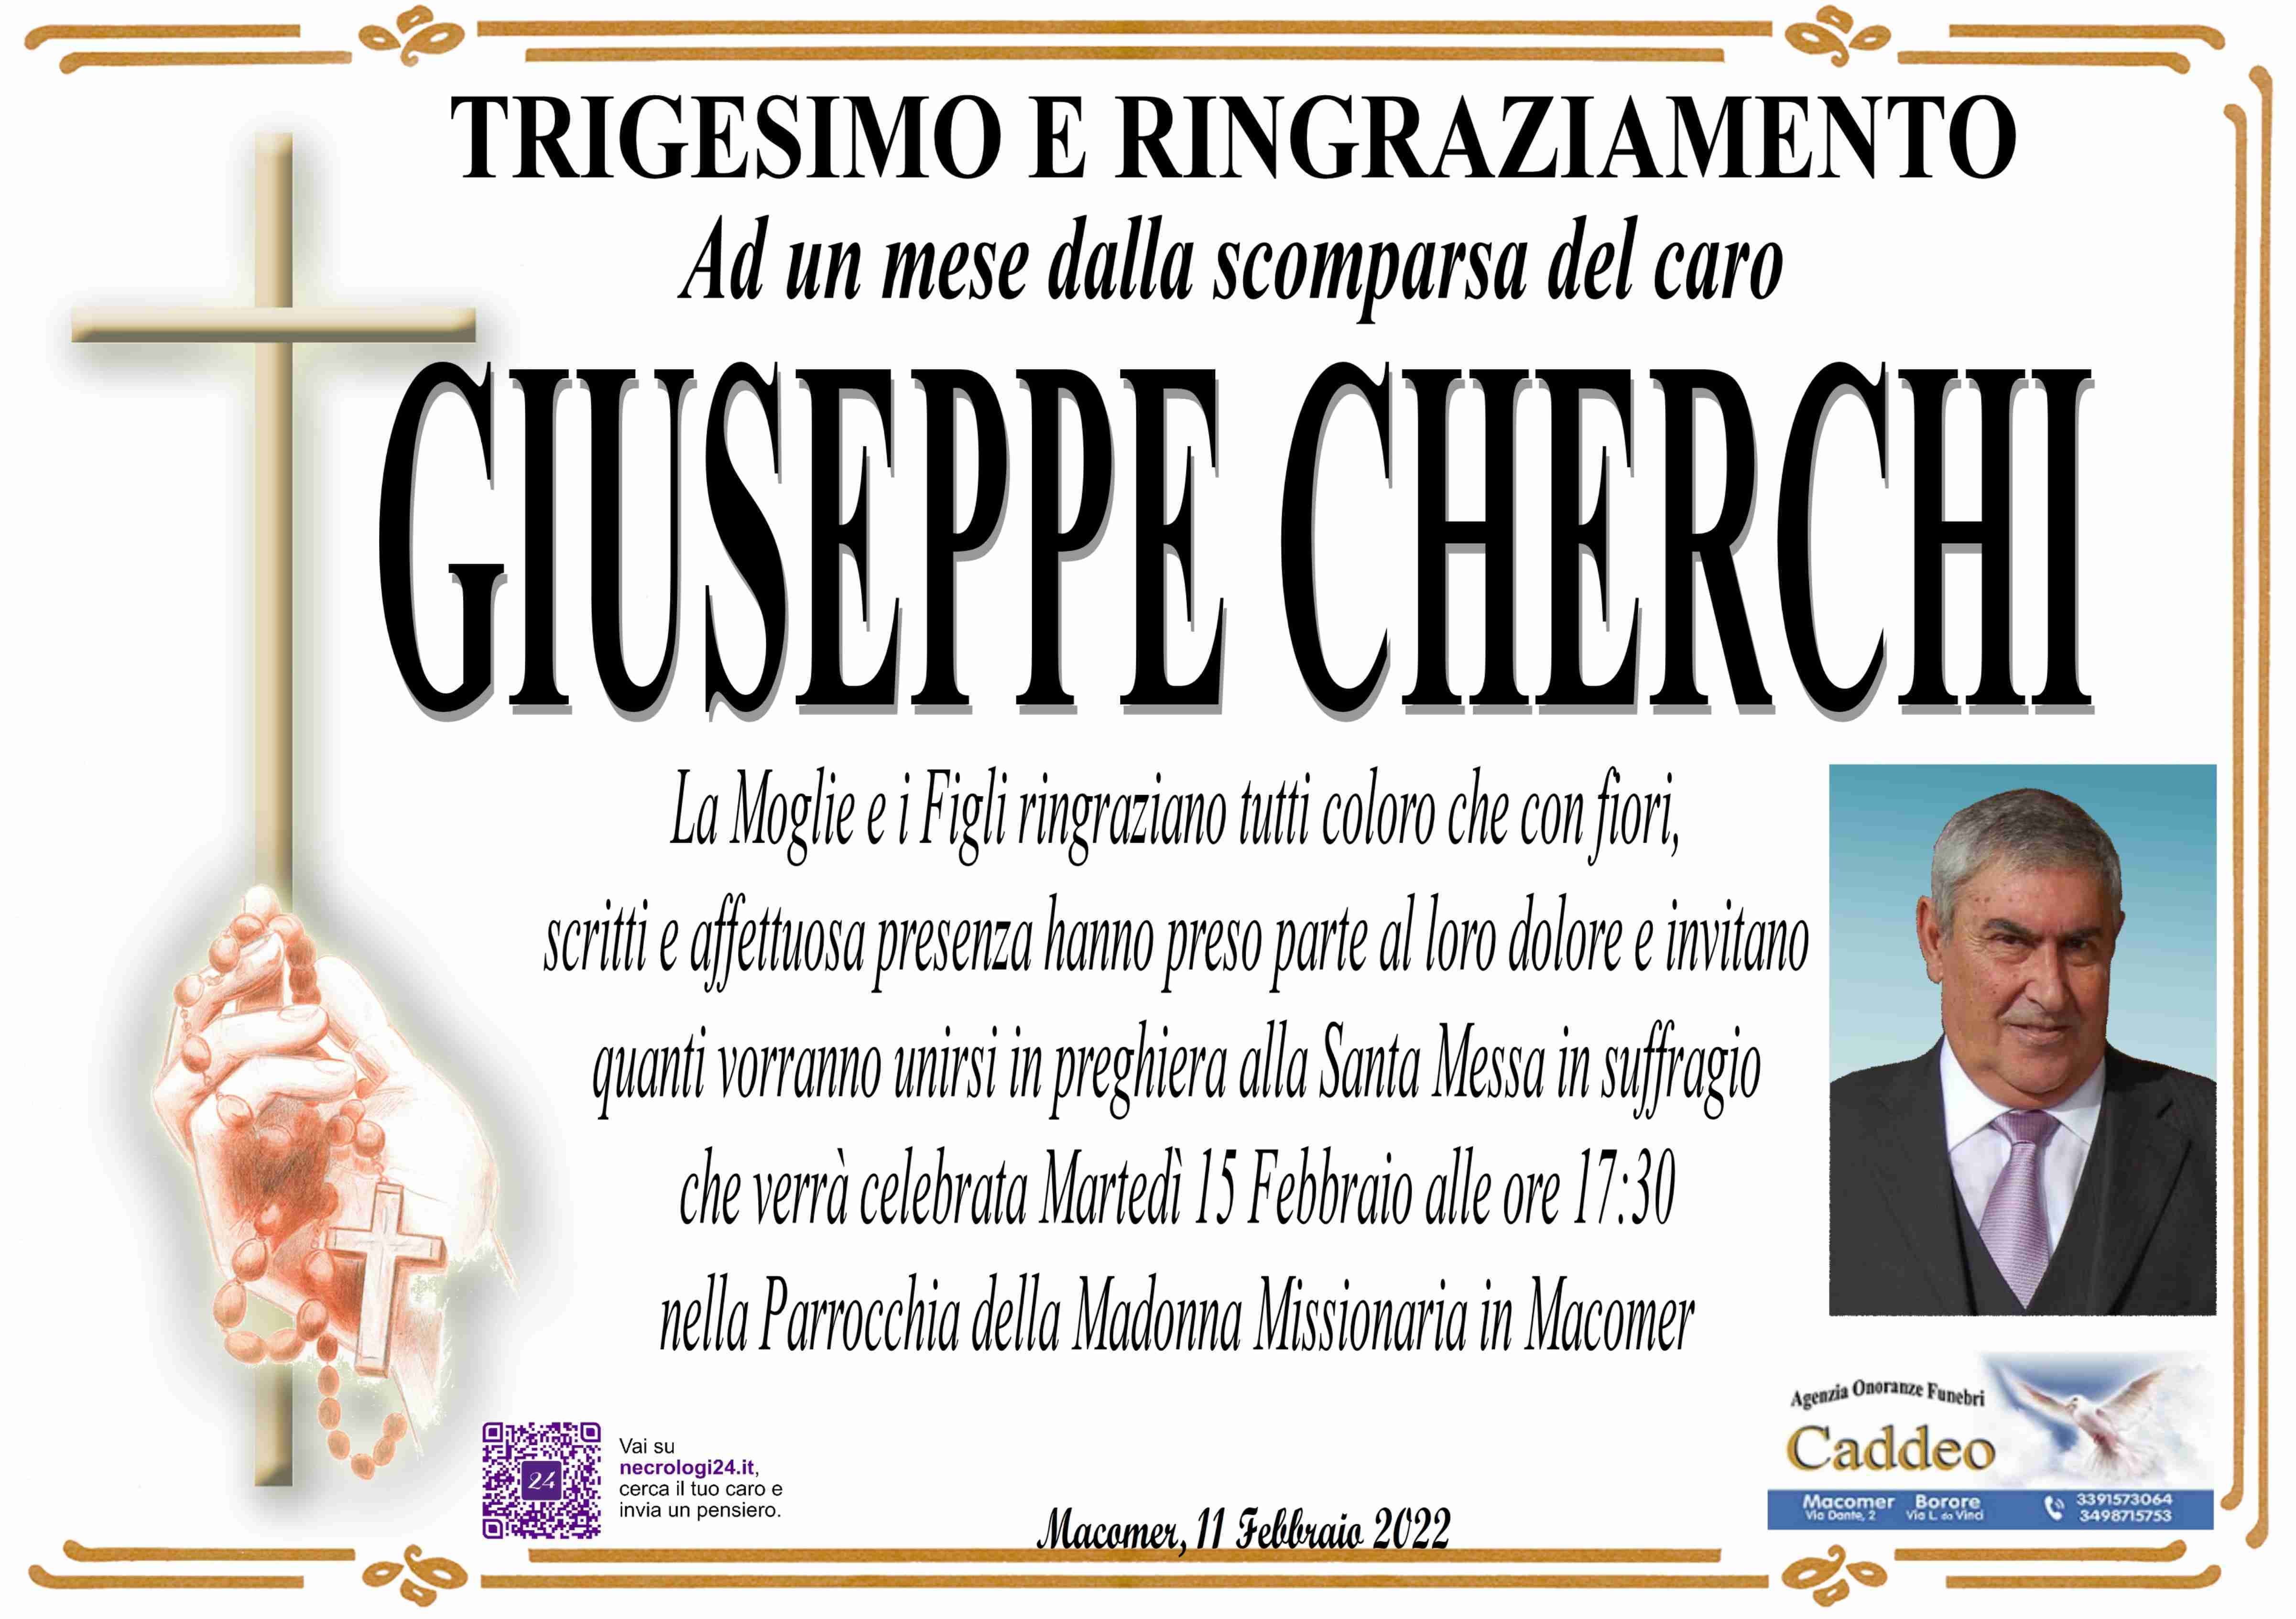 Giuseppe Cherchi